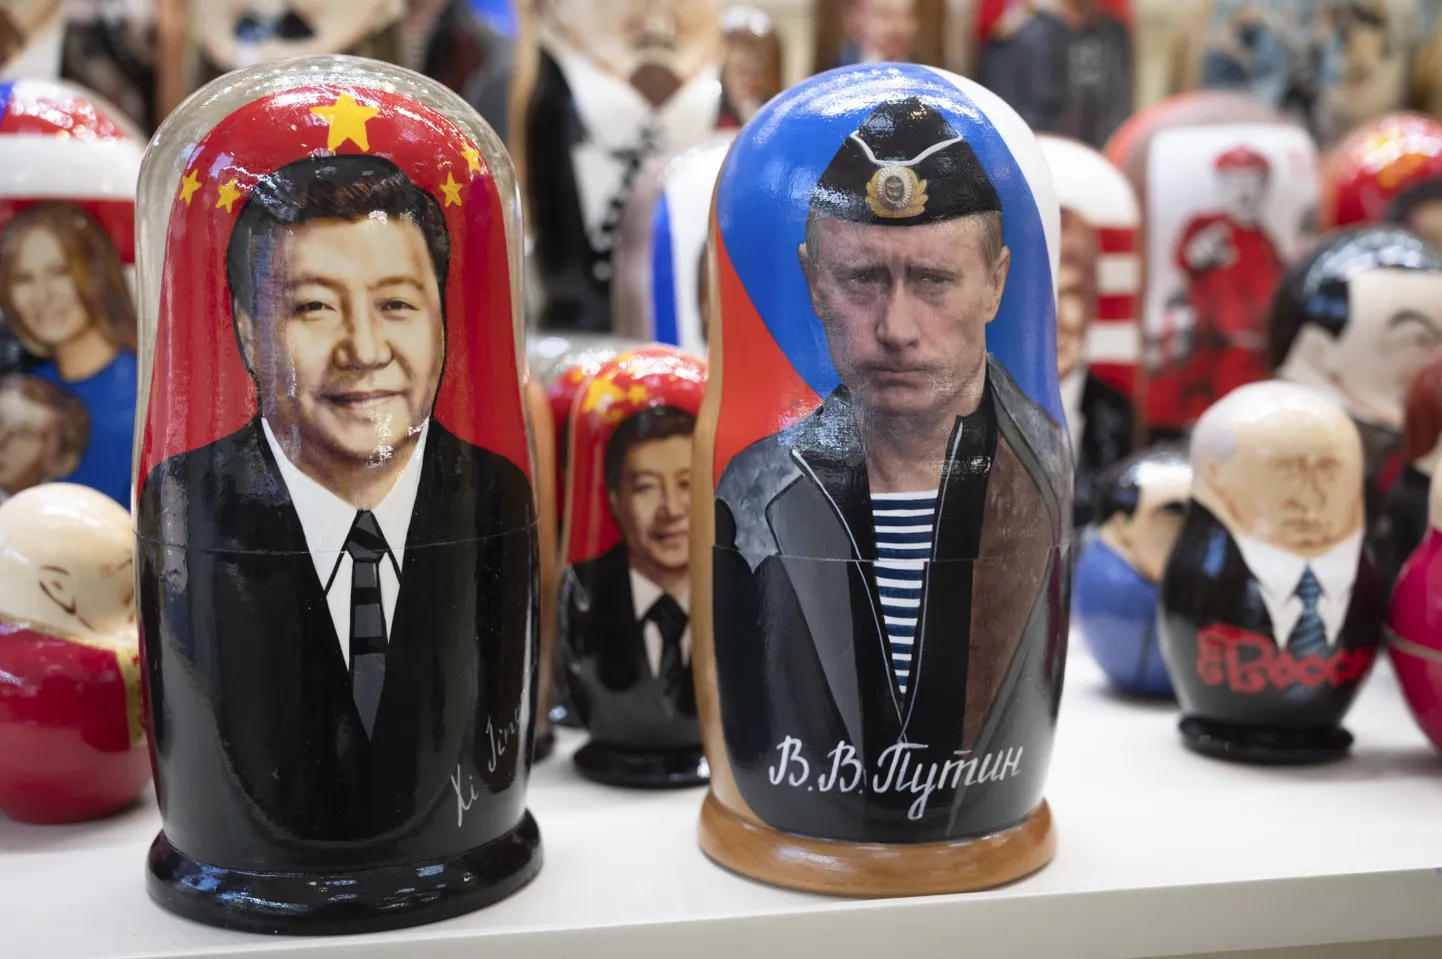 Vene matrjoškad Moskvas Xi Jinpingi ja Vladimir Putini kujutistega. Vene-Hiina suhted meenutavadki matrjoškasid, kus on mitu kihti ja mitu sisu.